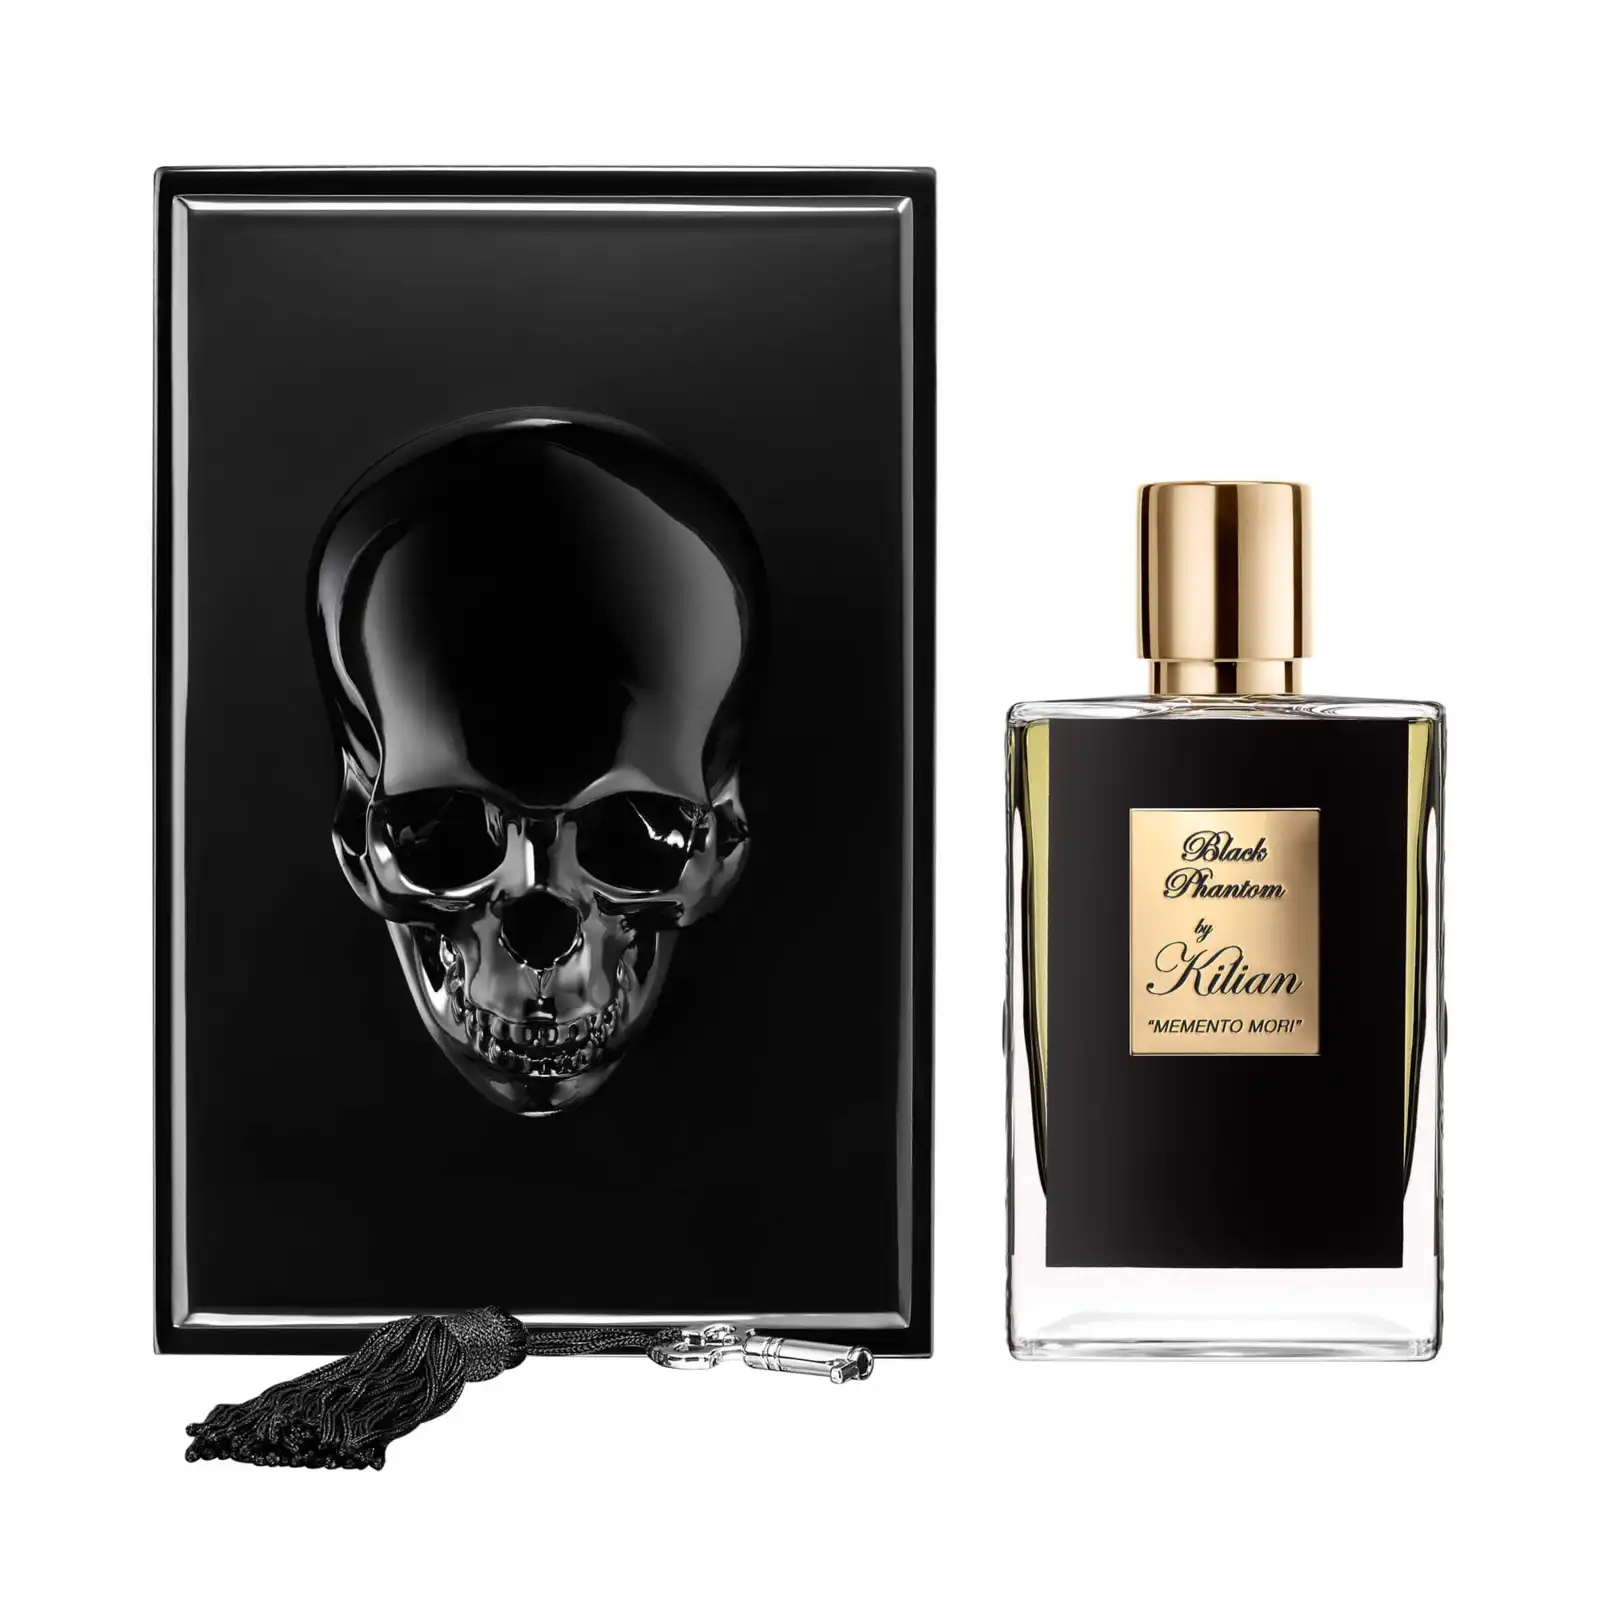 – Black Phantom ‘MEMENTO MORI’ Eau de Parfum